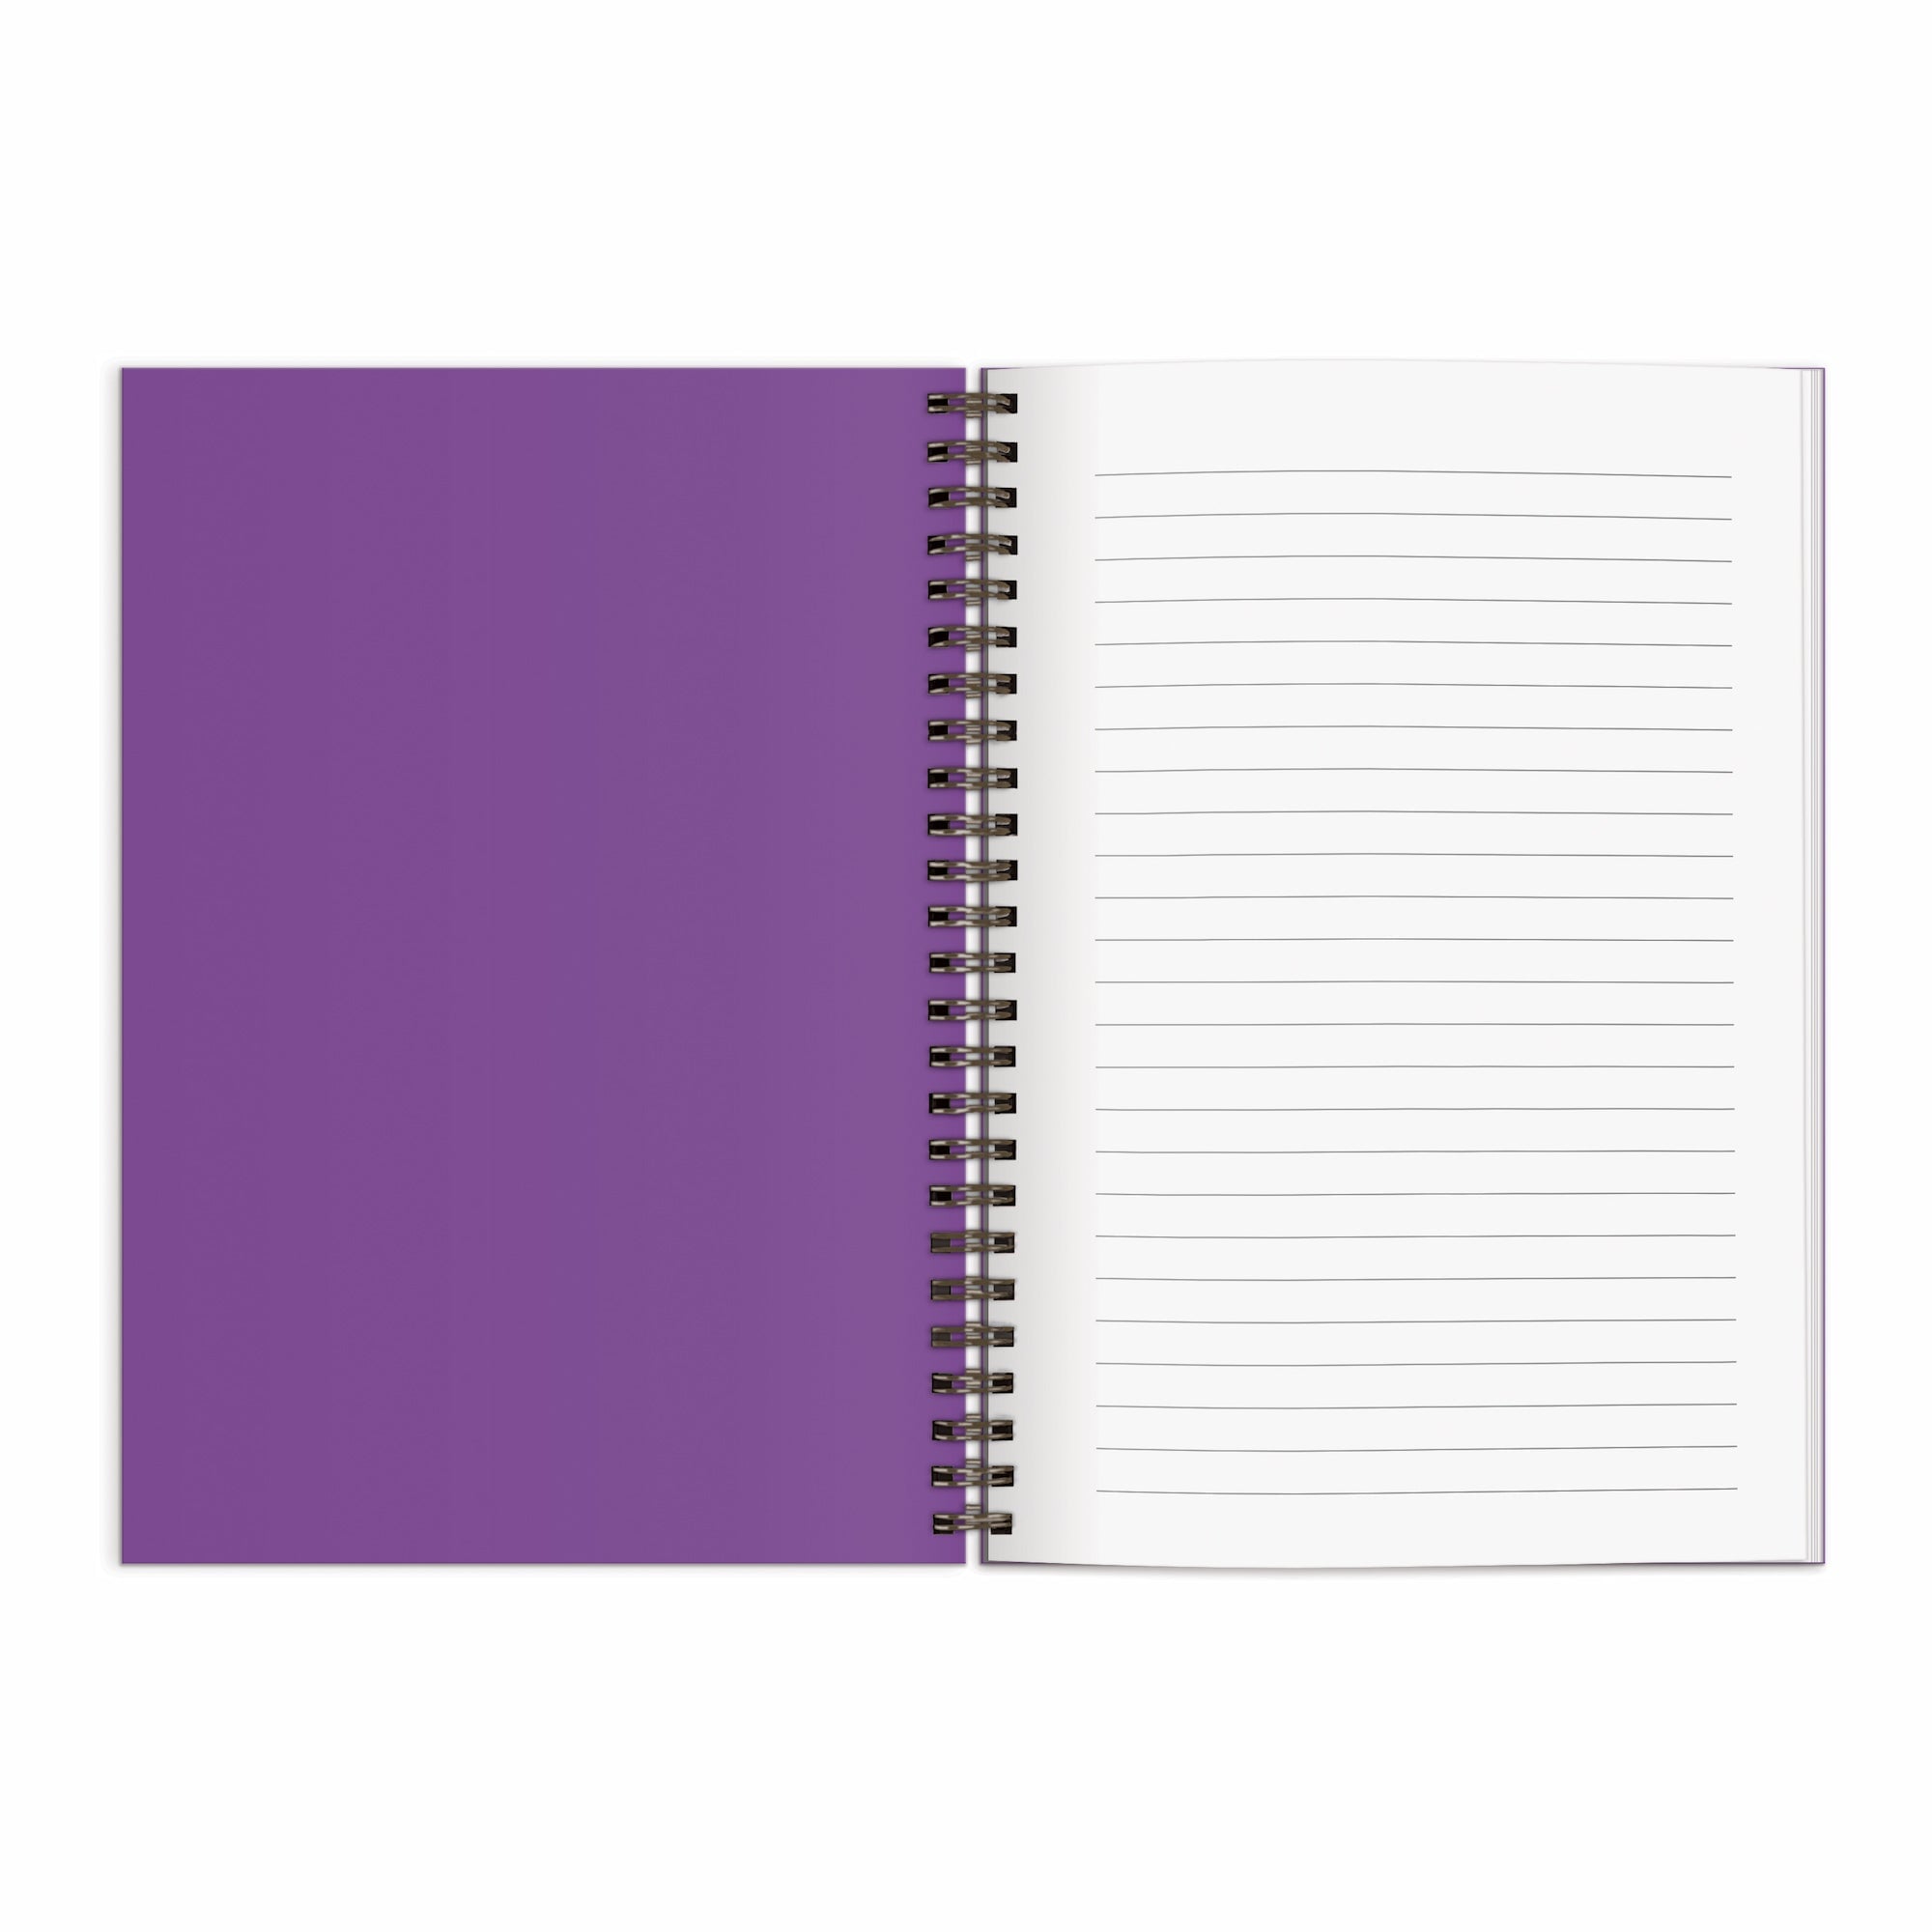 Bong, James Bong, Notebook Blank Journal